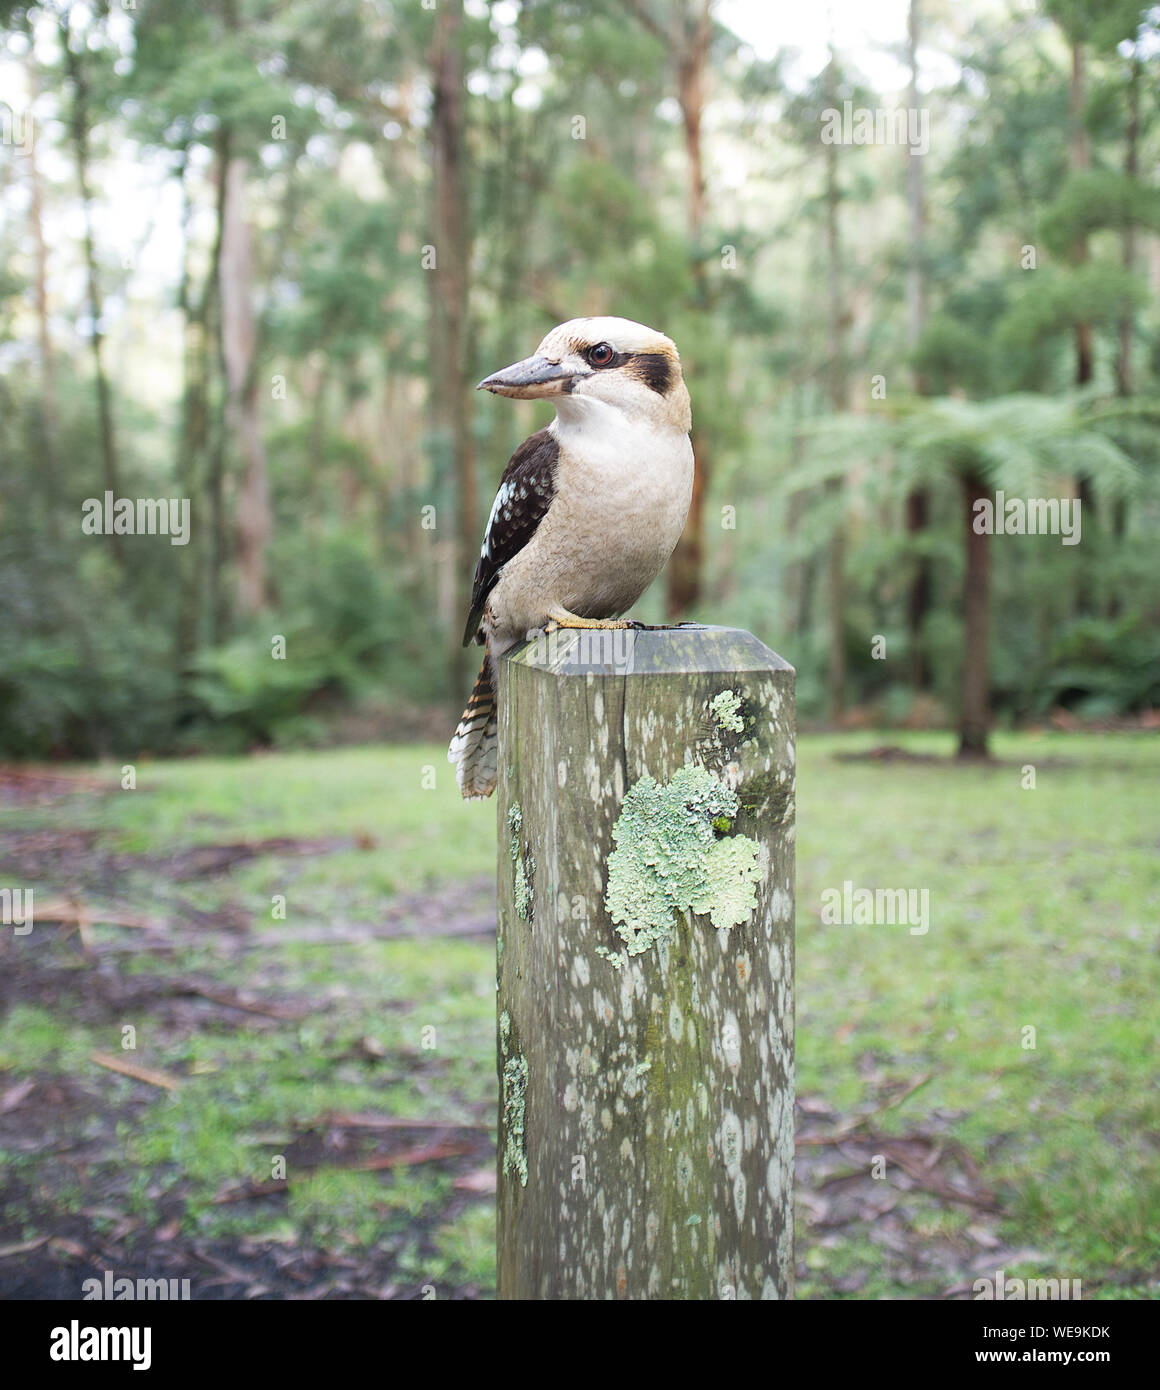 Close-up donde se posan los pájaros sobre un poste de madera Foto de stock